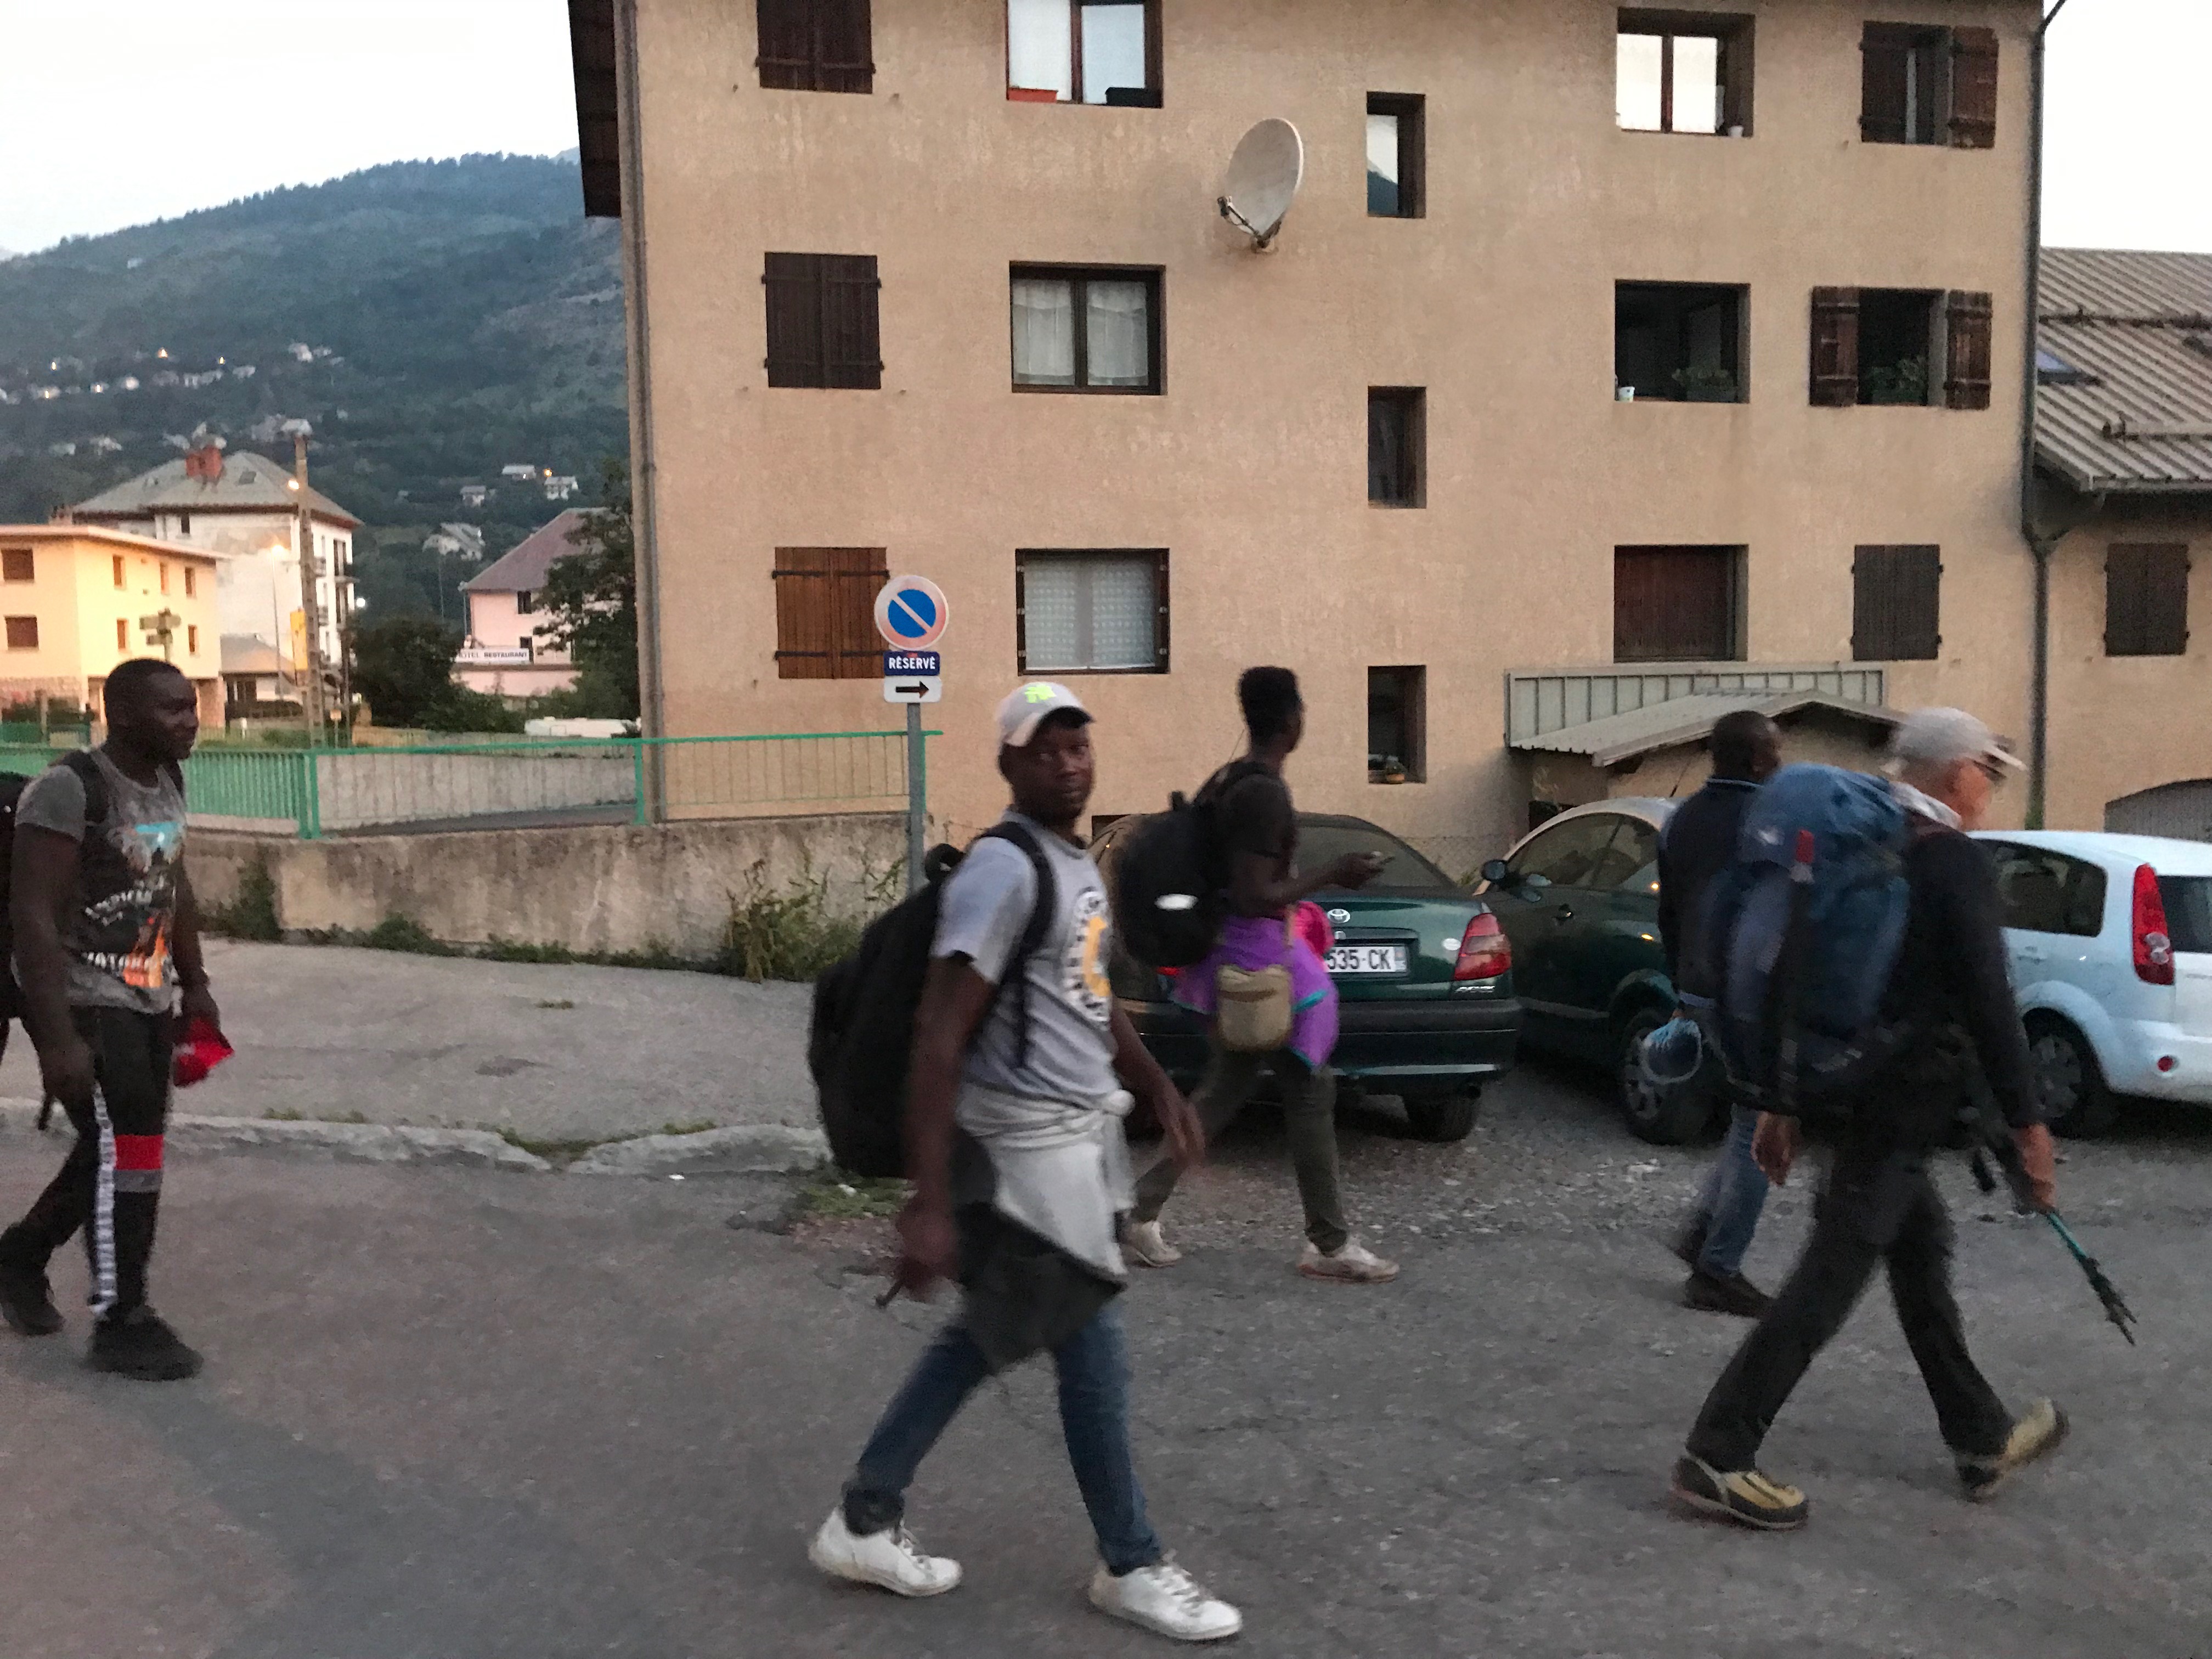 5 heures 30, Jean Luc guide un groupe de migrants au ''Refuge solidaire'' de Briançon.